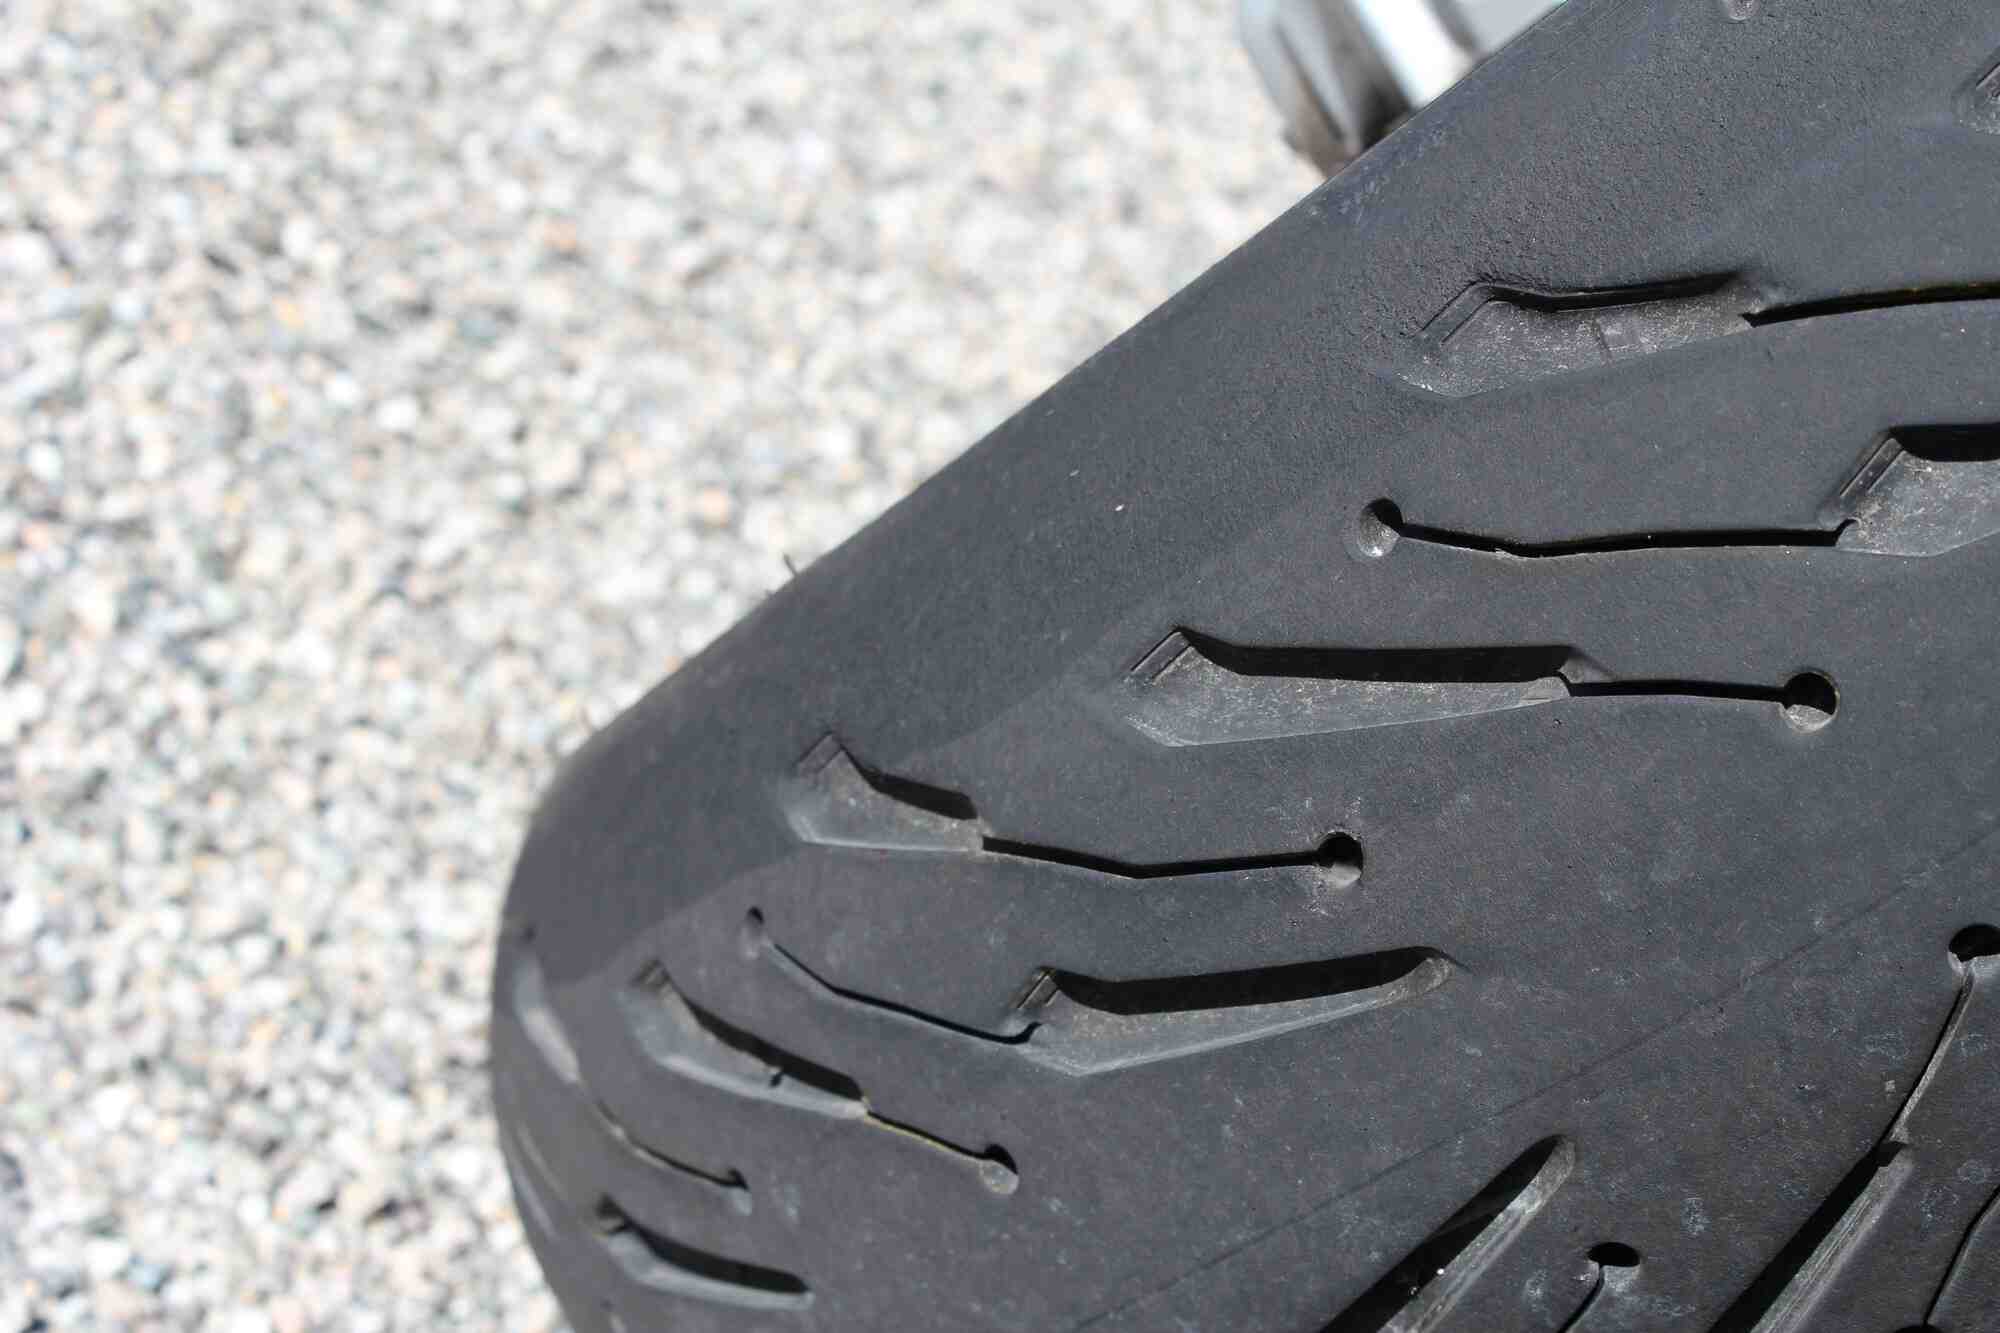 Comment mesurer l'usure des vieux pneus?